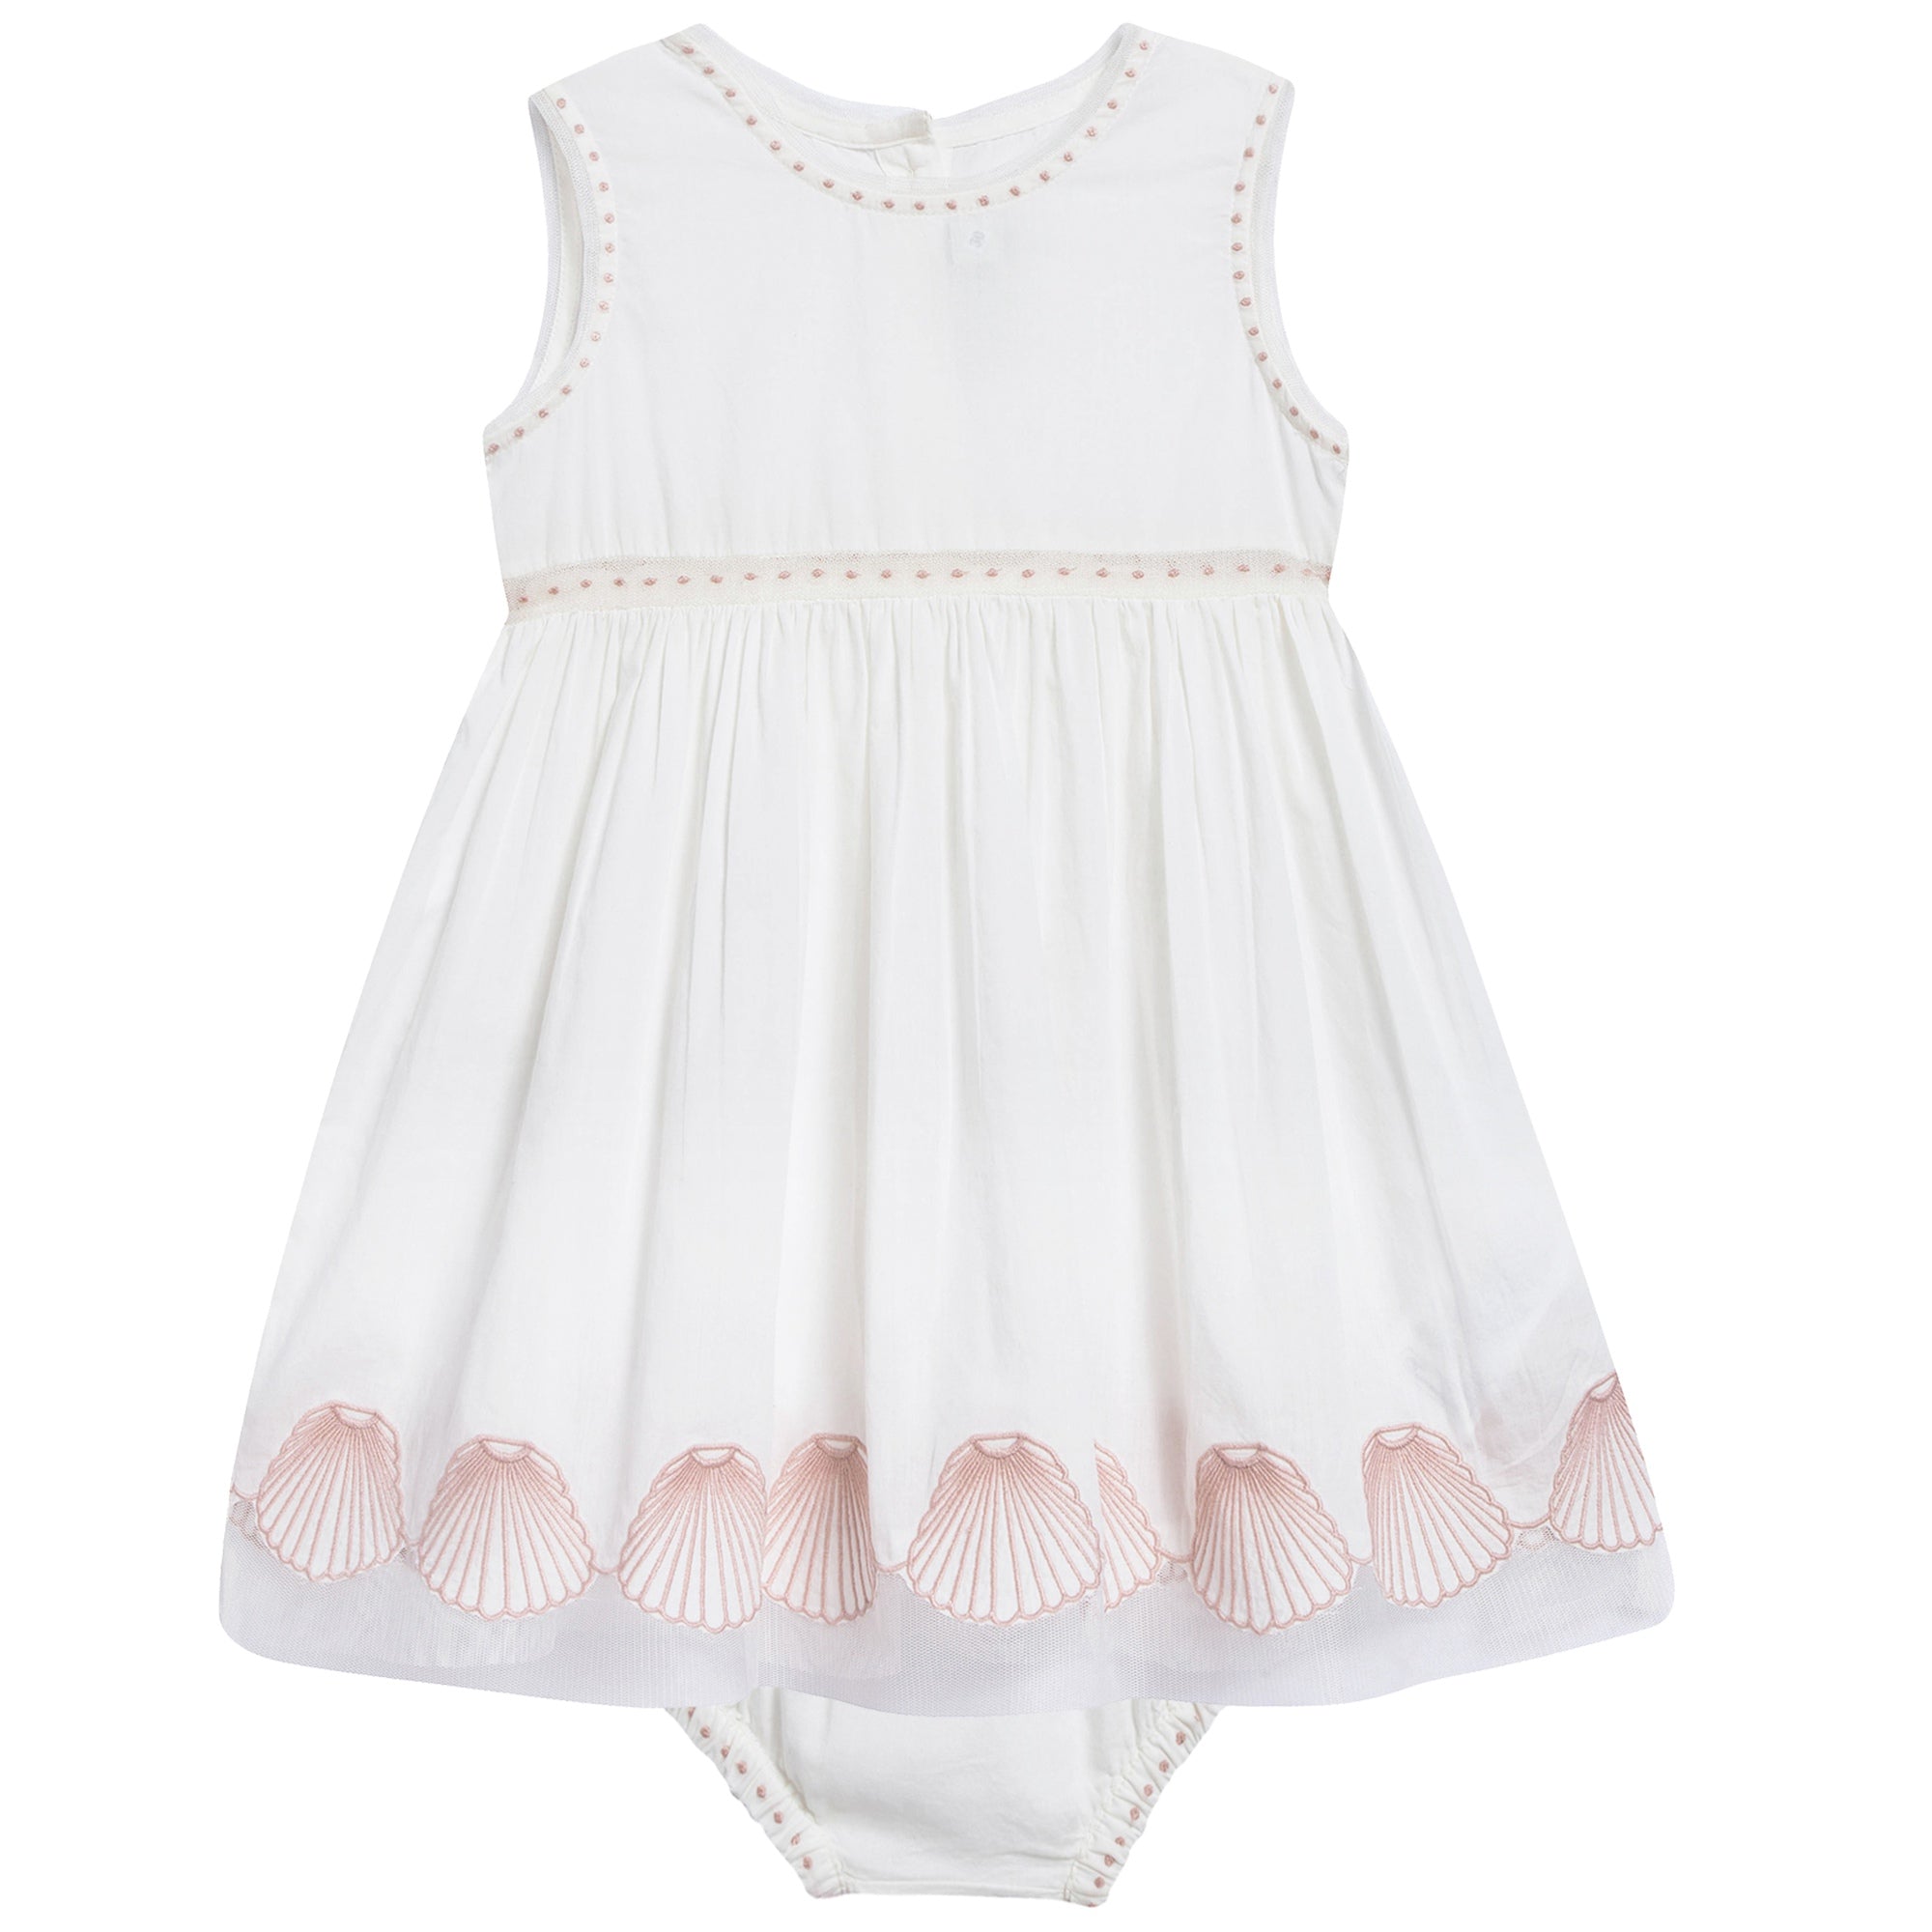 Baby Girls White Dress